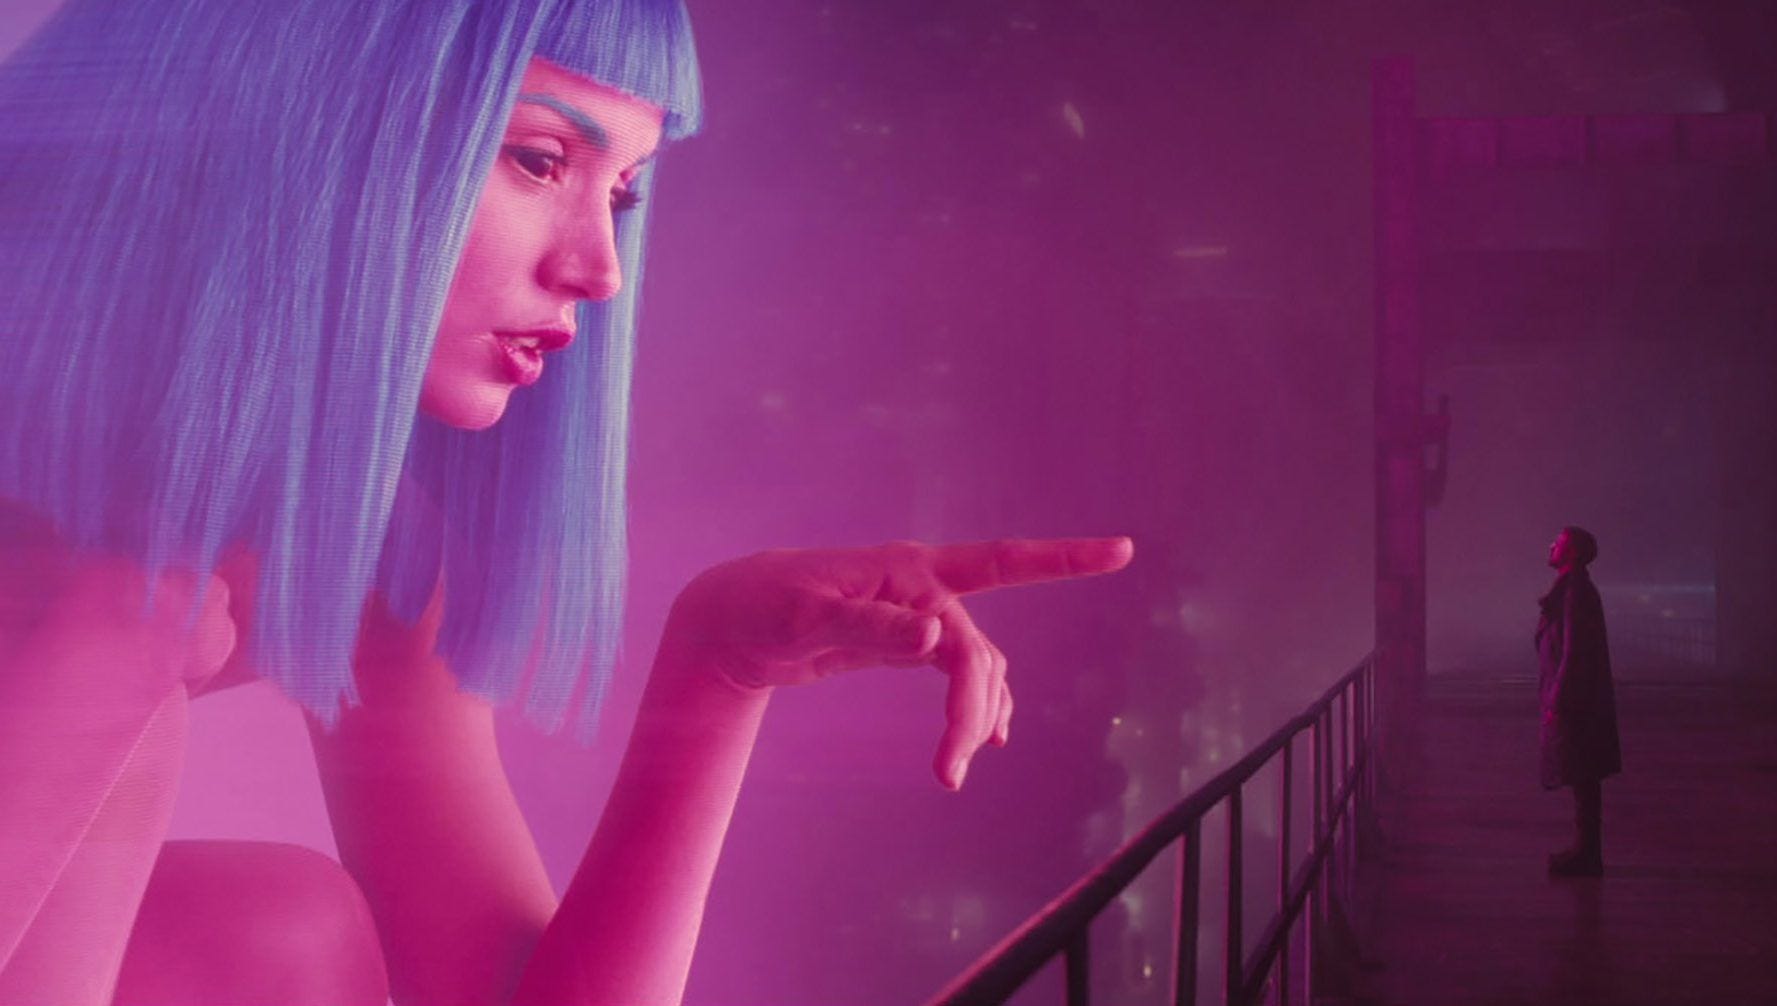 Blade Runner 2049: existencialismo cyberpunk, neo-noir e inteligencia  artificial | by Martín Julio Vázquez | Medium